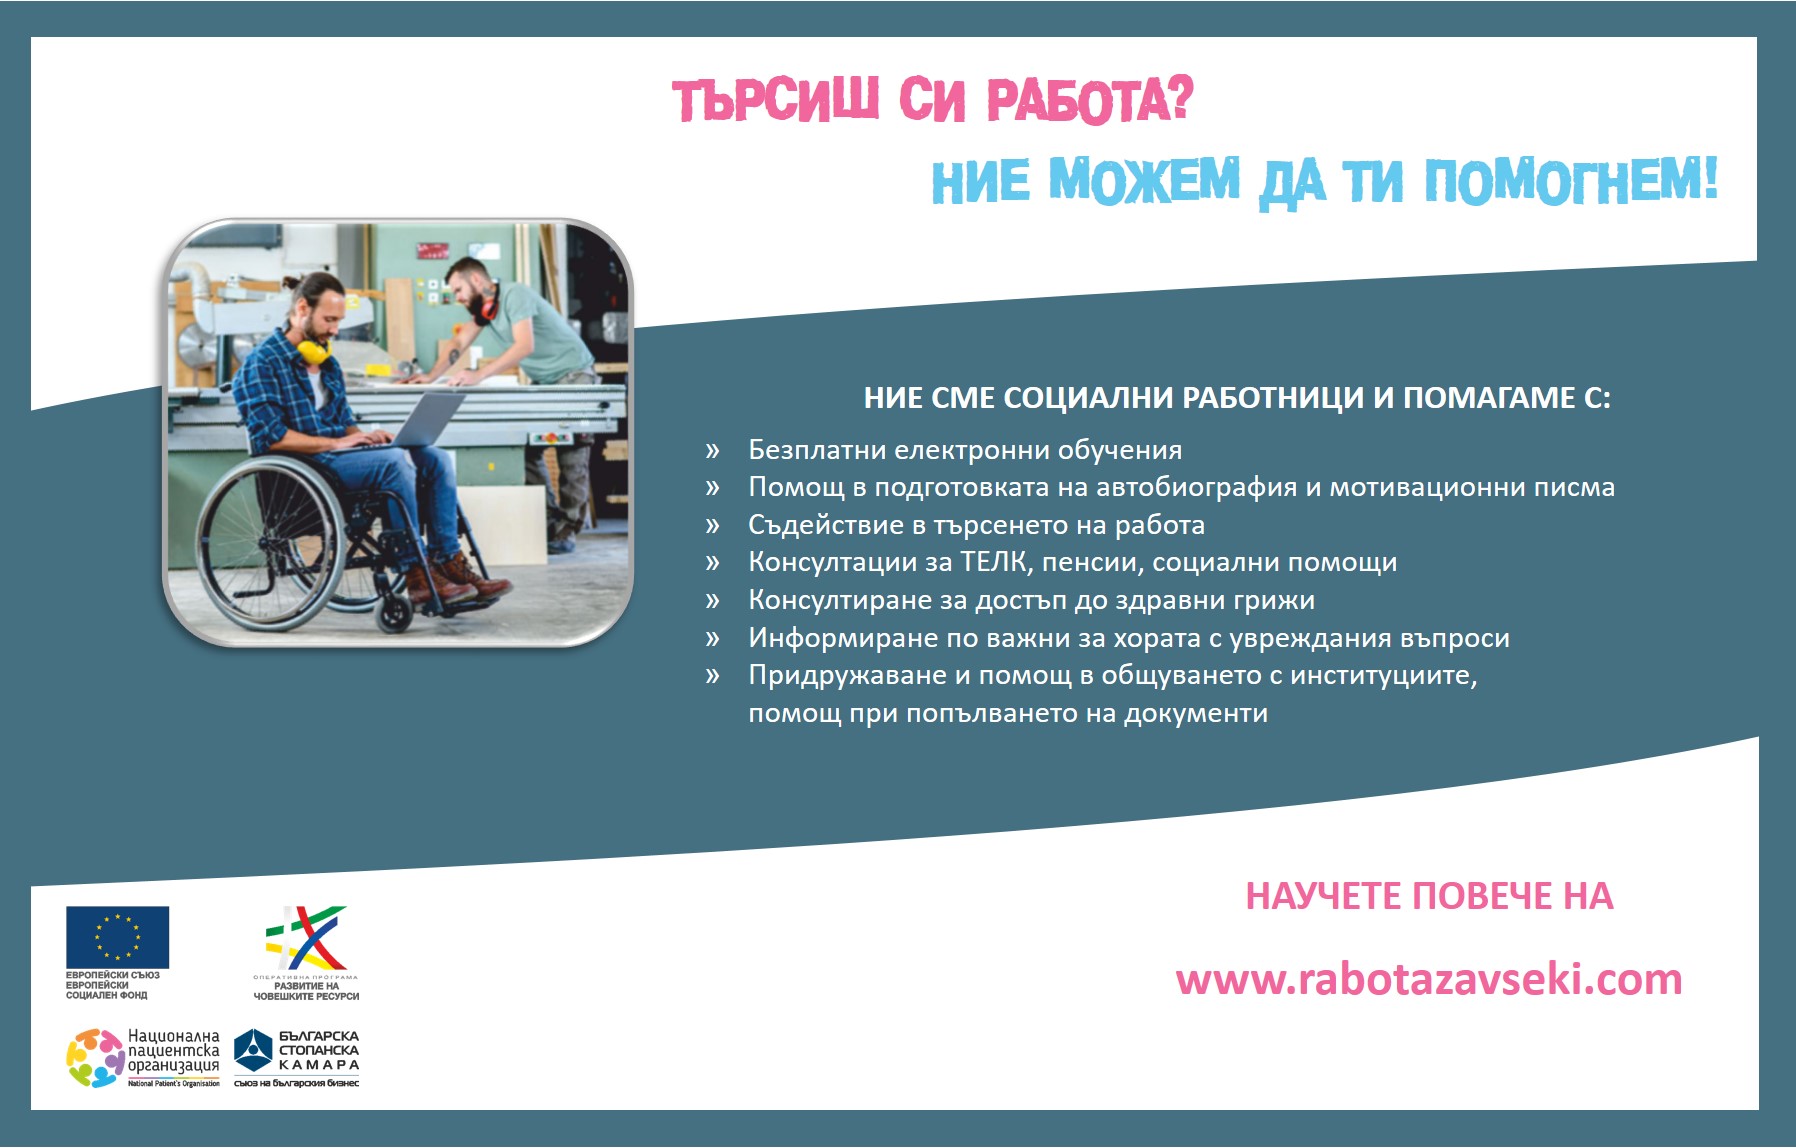 Социални работници от Бургас, Враца, Пловдив, Хасково и Шумен ще помагат на хора с ТЕЛК и техни близки в търсенето на работа